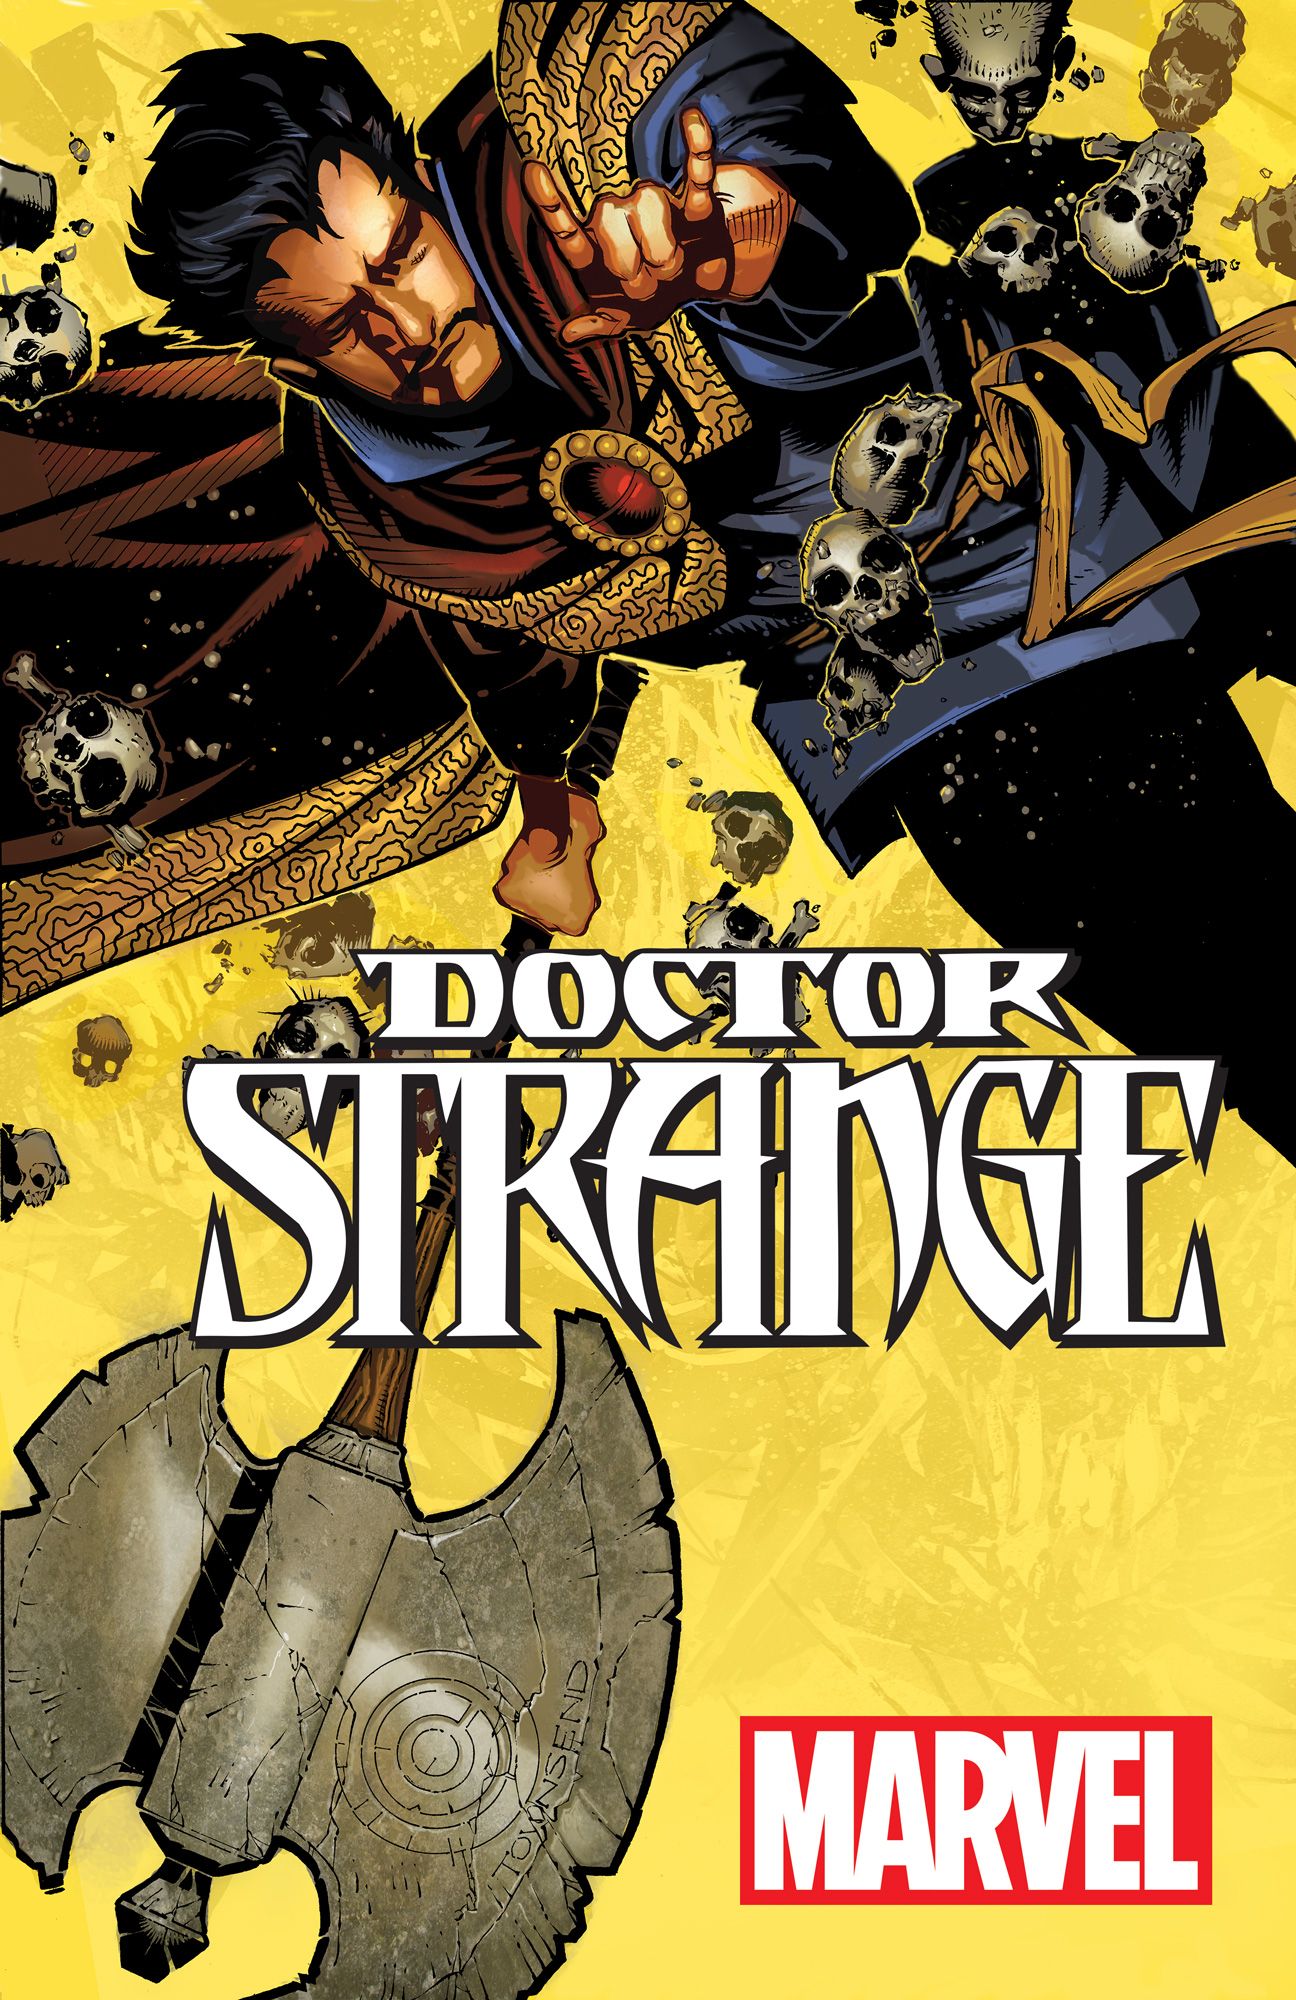 Doctor Strange #3 Value - GoCollect (doctor-strange-3 )